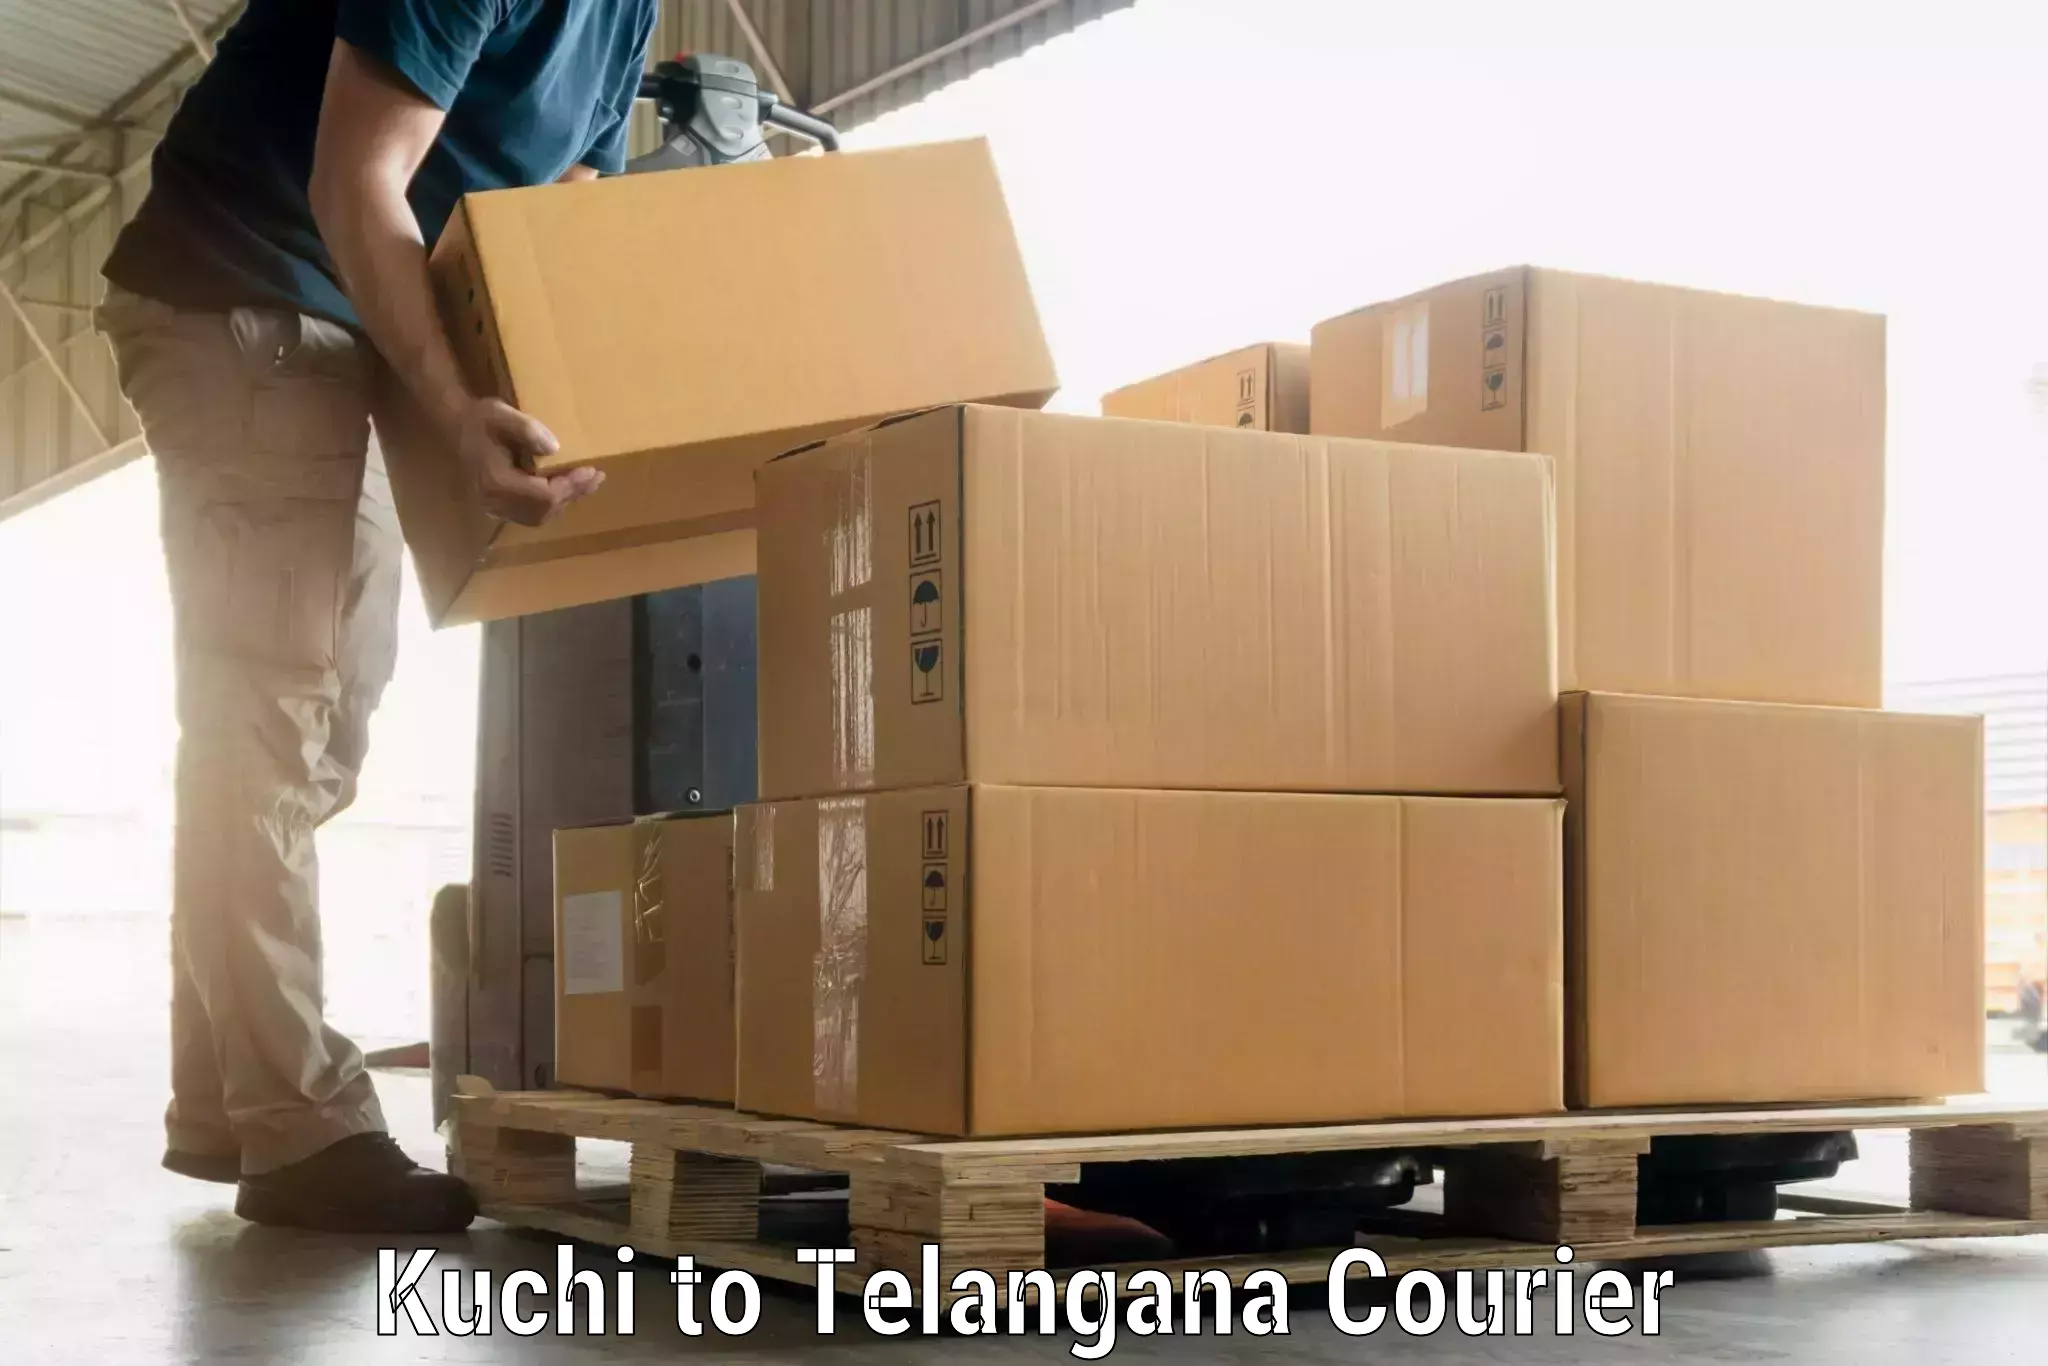 Luggage shipping estimate in Kuchi to Rudrangi